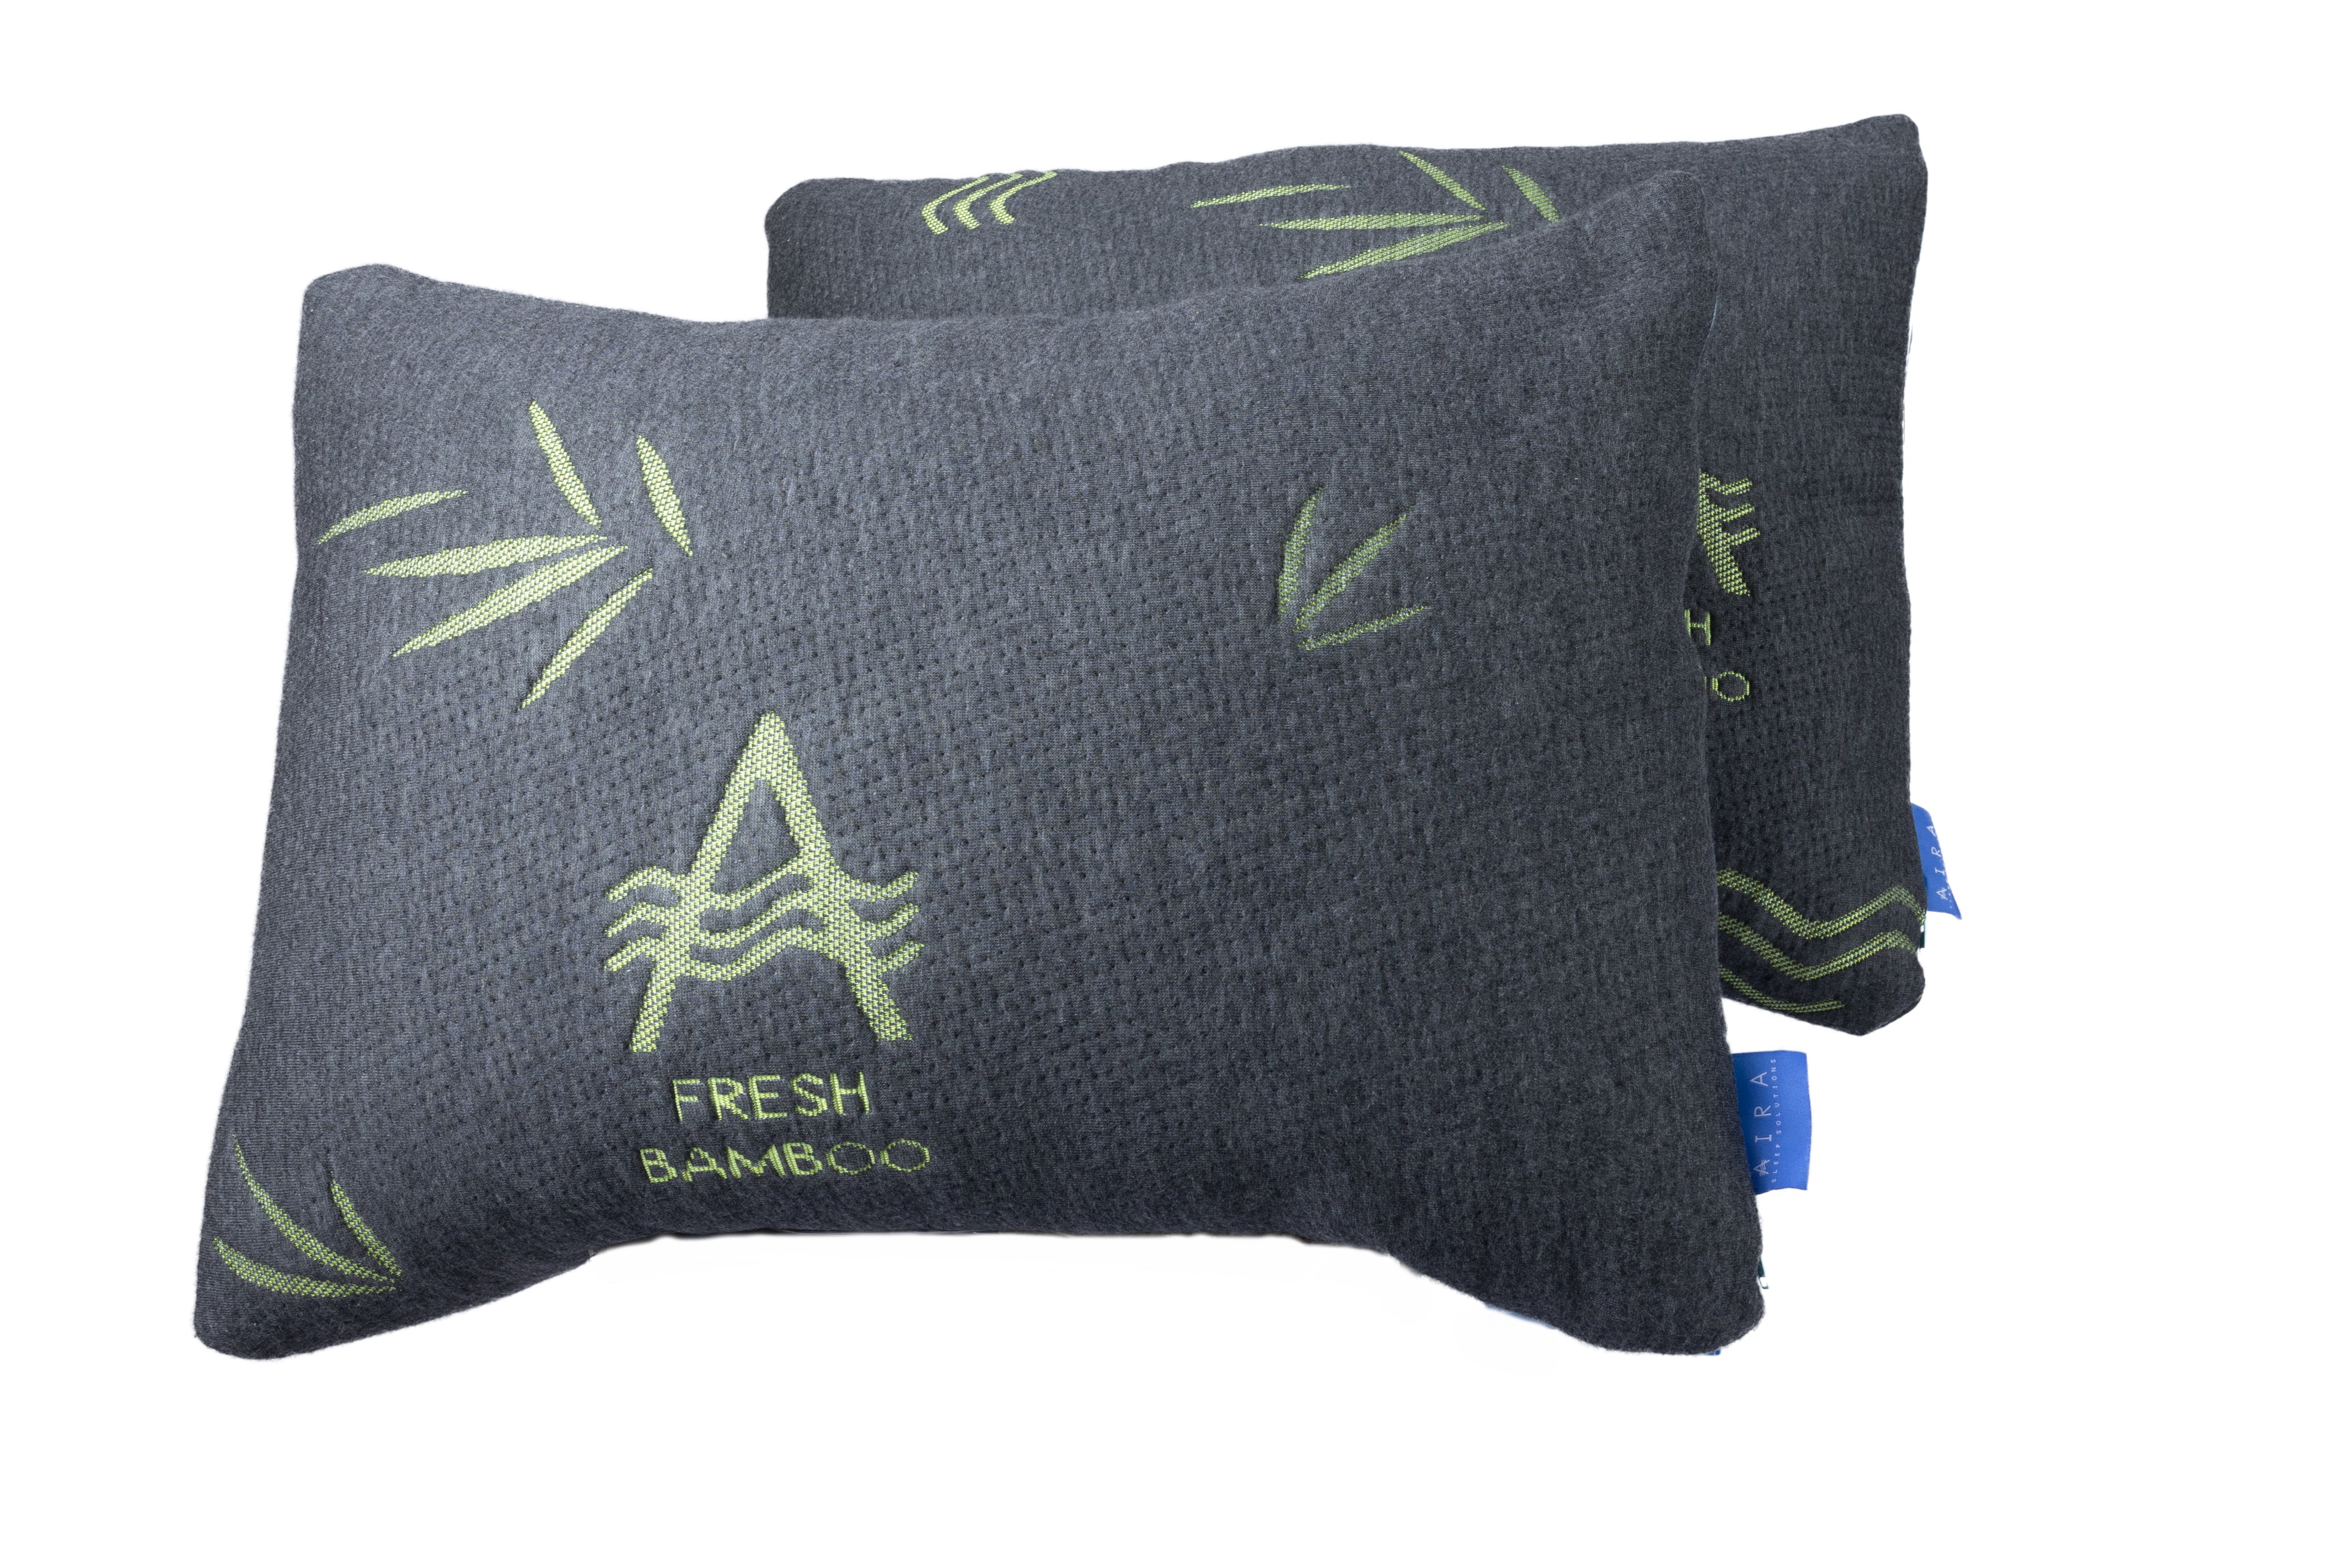 Aira Almohada Set de 2 de Bambu Relleno de Microfibra Anti acaros - AIRA SLEEP Colchones Memory Foam | Descuentos